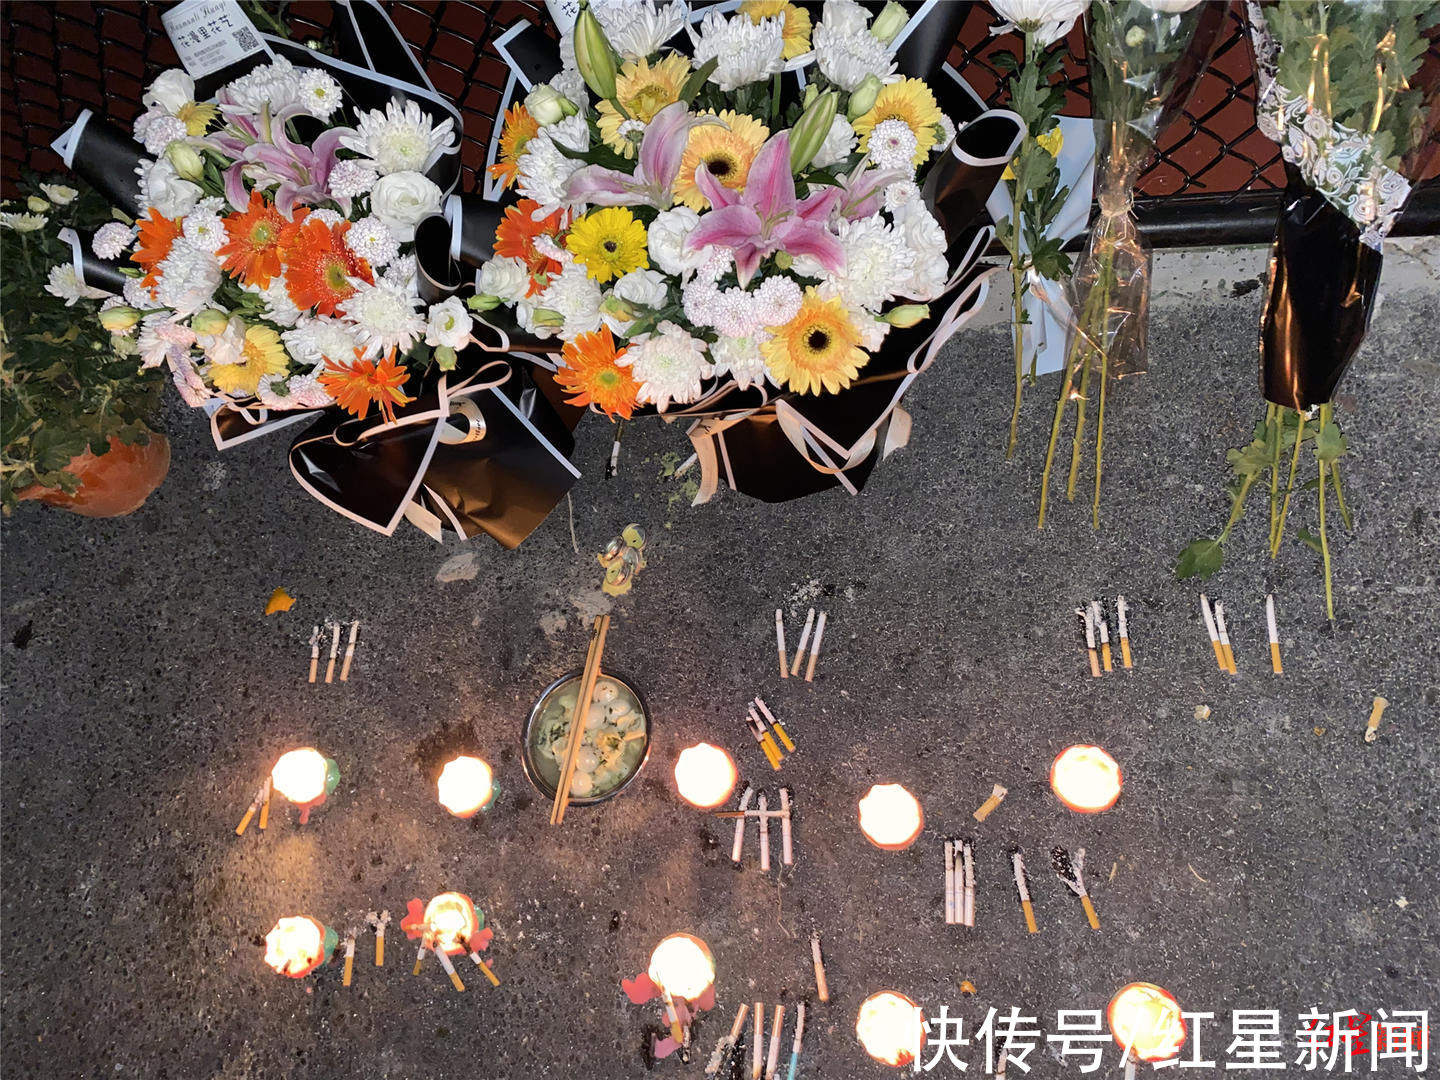 红星新闻|亳州牺牲消防员10岁妹妹手捧遗像送别哥哥，父母靠“炸油条、卖麻花”生活